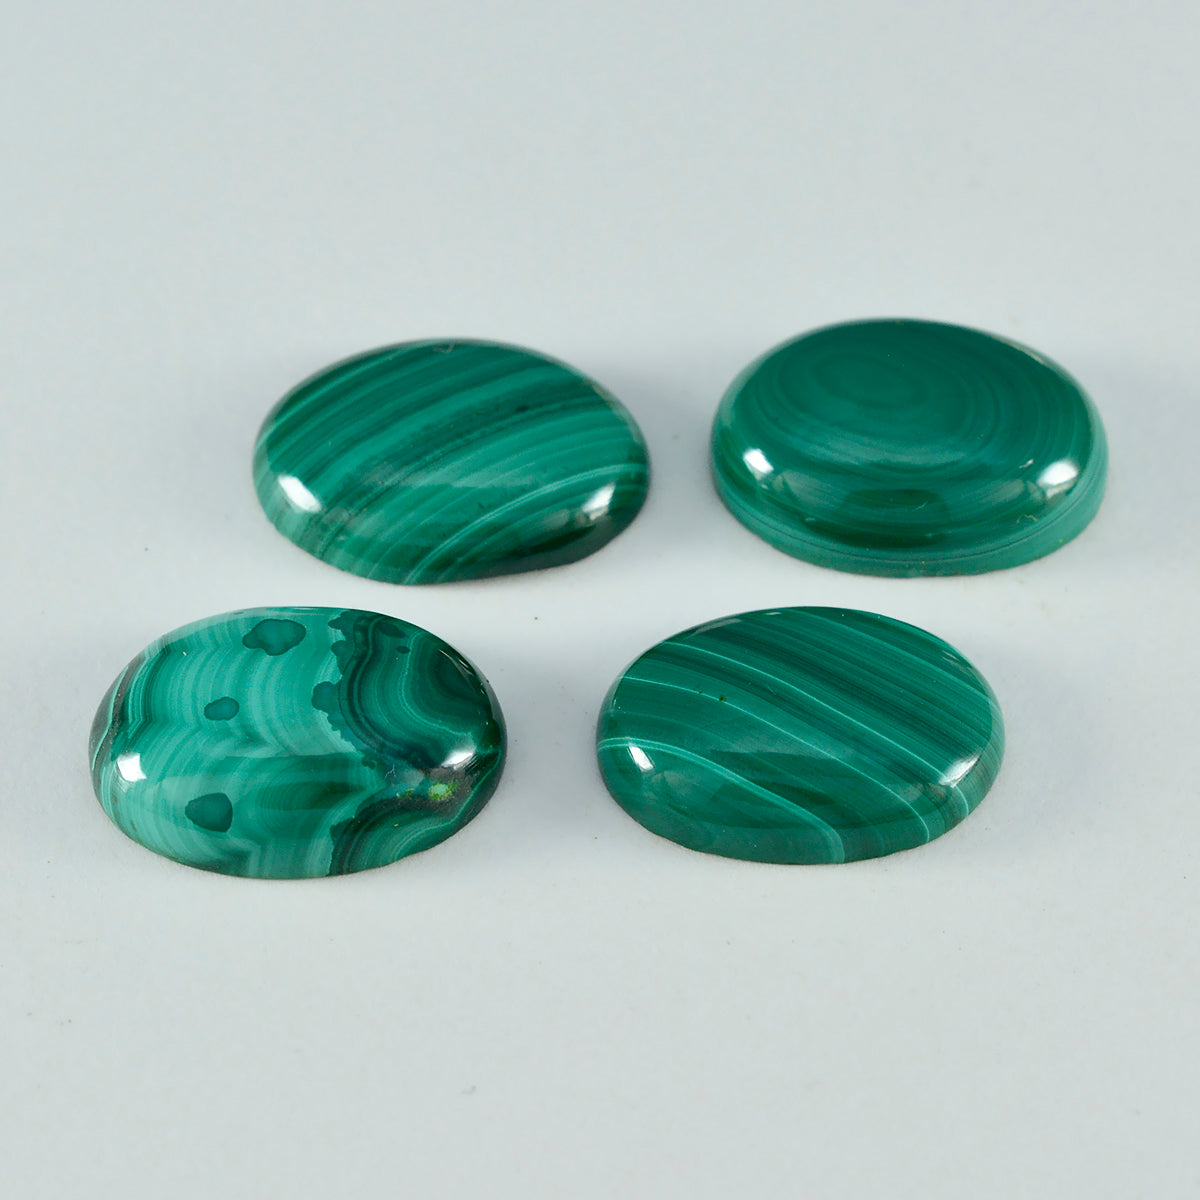 Riyogems 1 Stück grüner Malachit-Cabochon, 10 x 12 mm, ovale Form, ein hochwertiger loser Stein